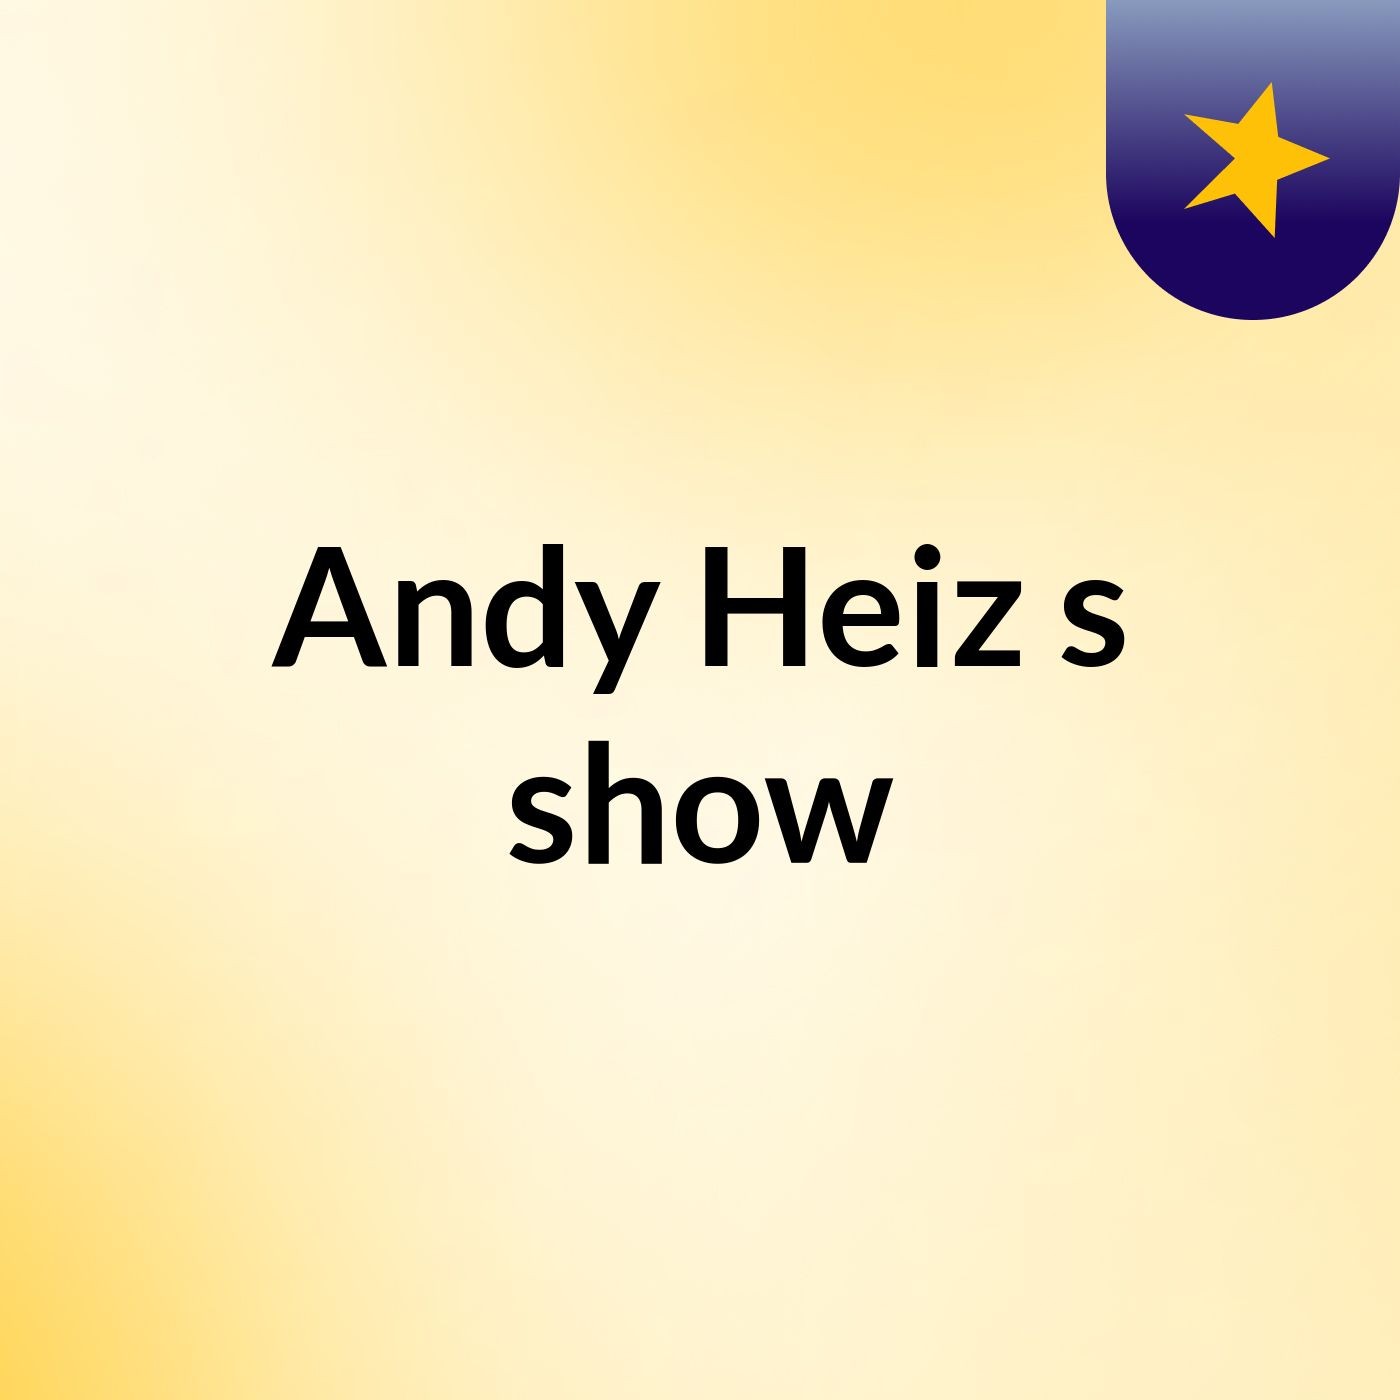 Andy Heiz's show